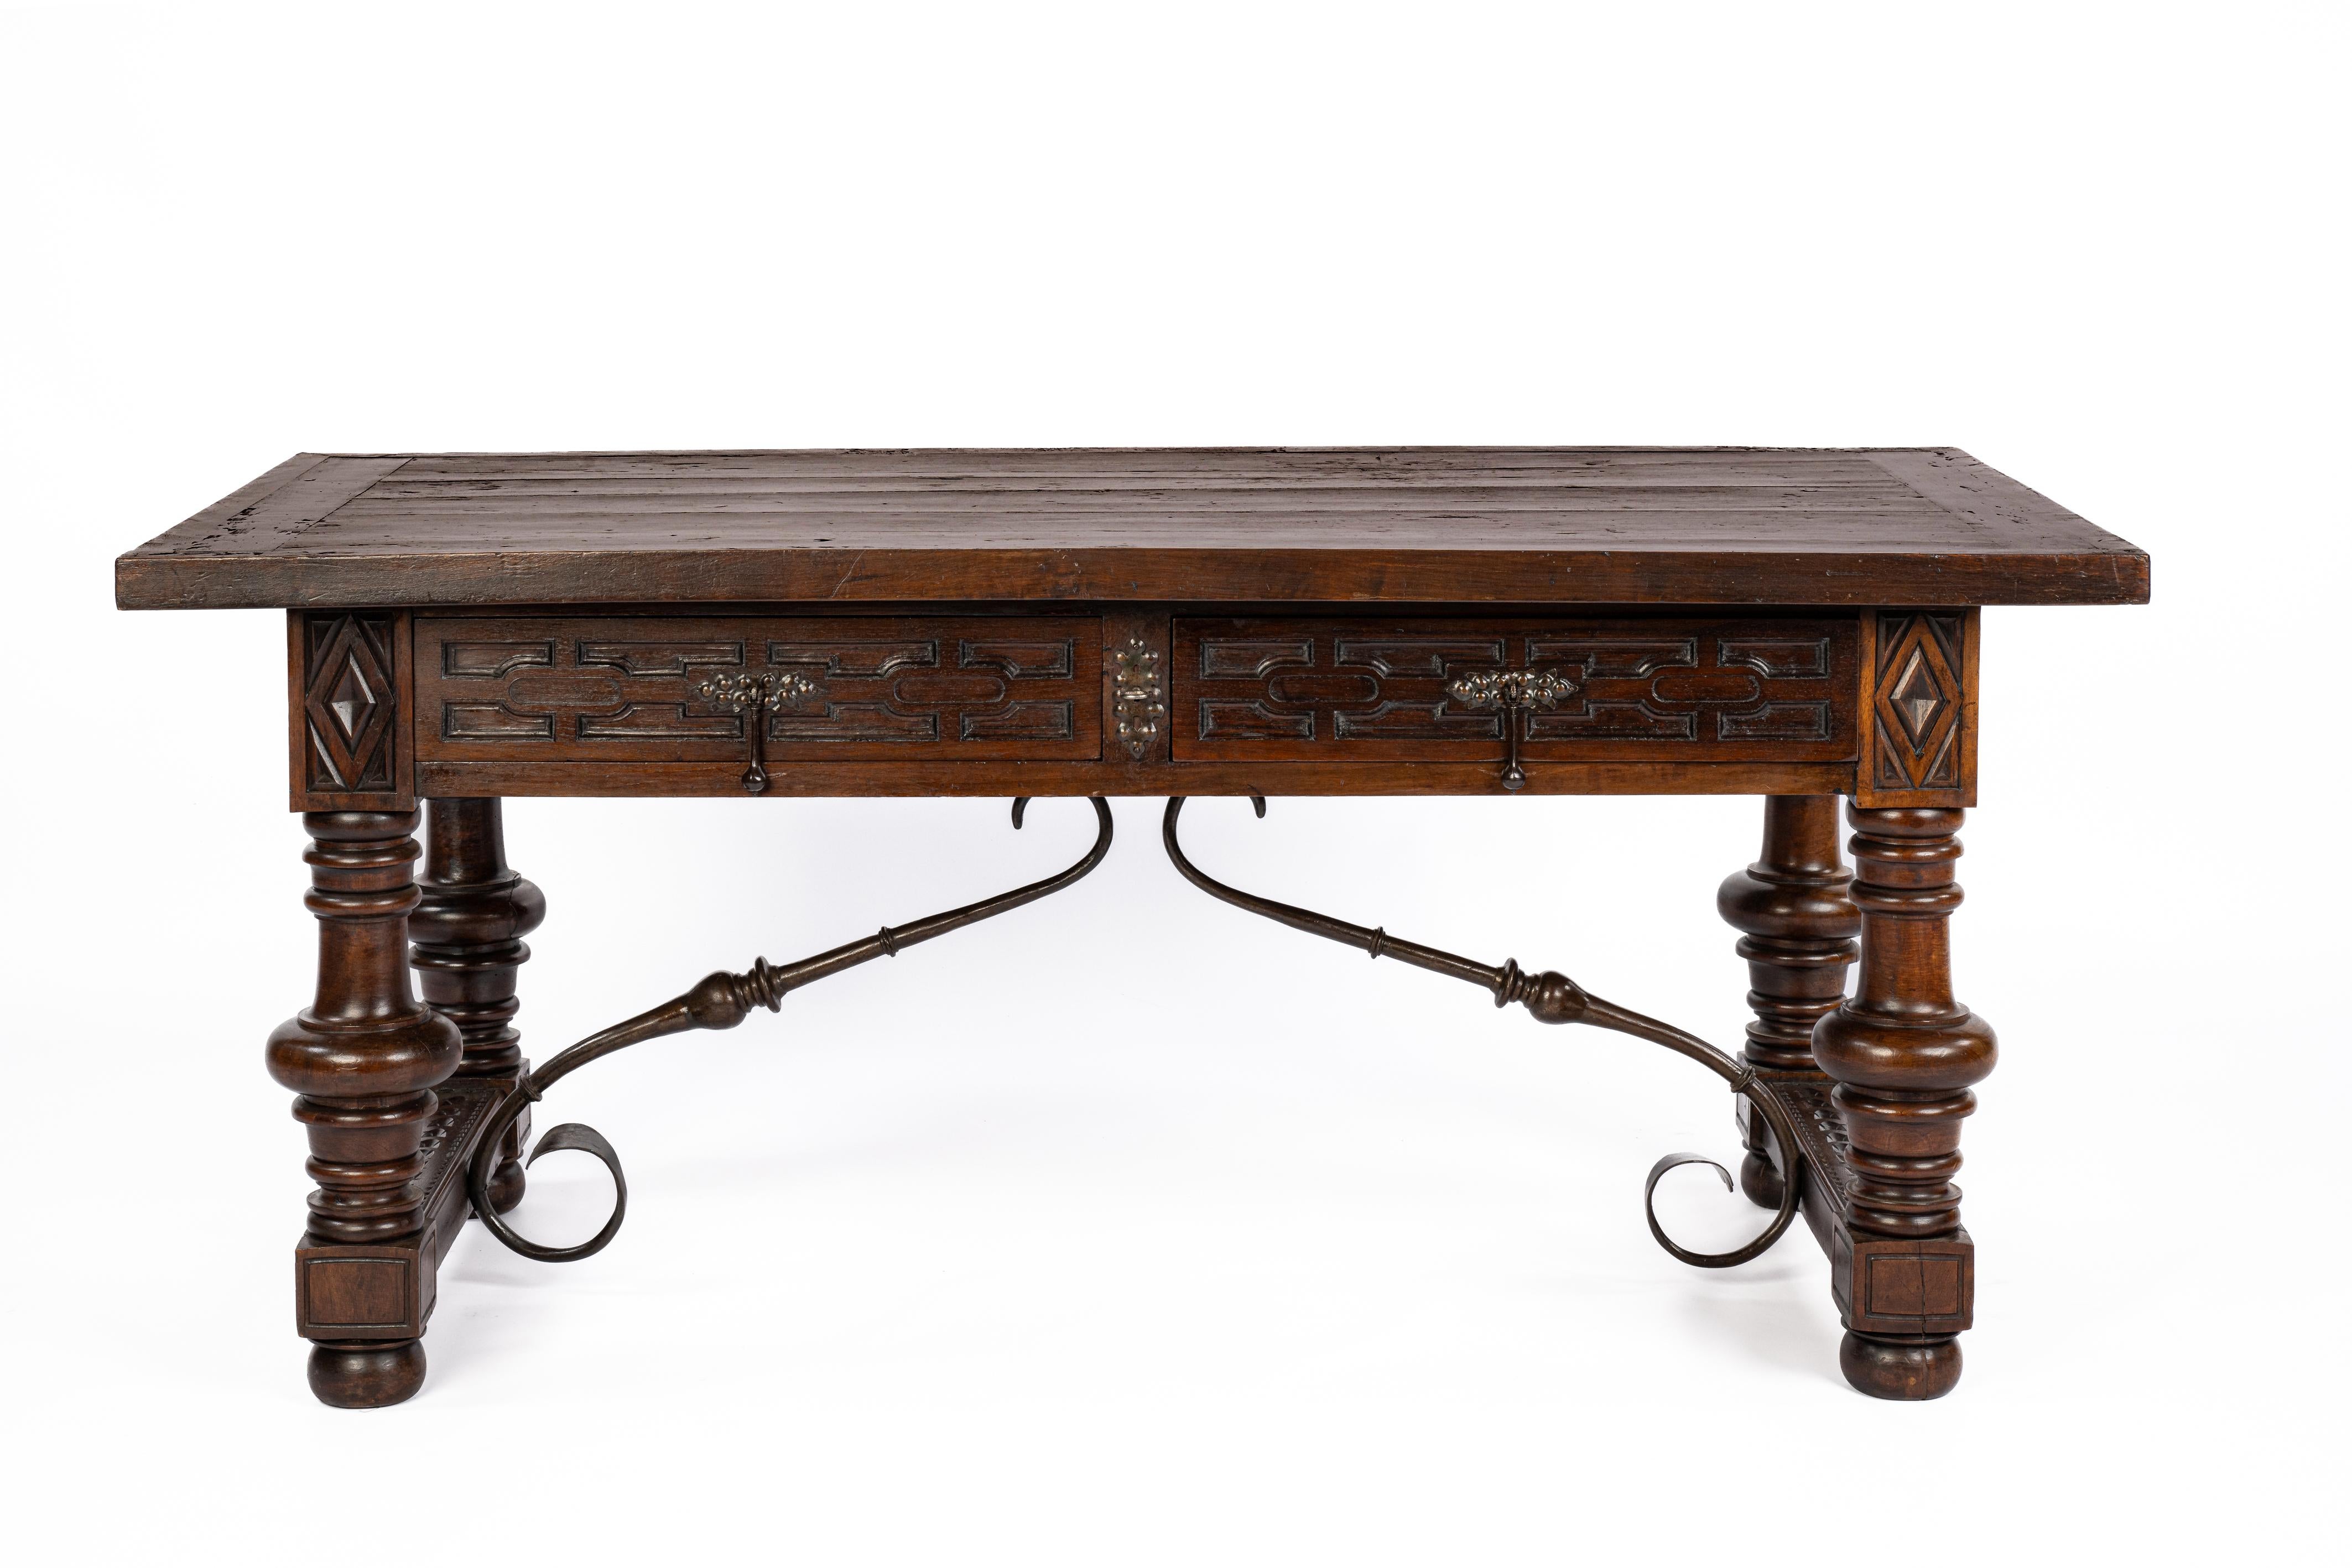 Questa bellissima scrivania antica del tardo XIX secolo in stile barocco spagnolo è realizzata in legno massiccio di castagno con gambe tornite unite da barelle in ferro battuto. Il tavolo è dotato di due cassetti con un frontale geometrico